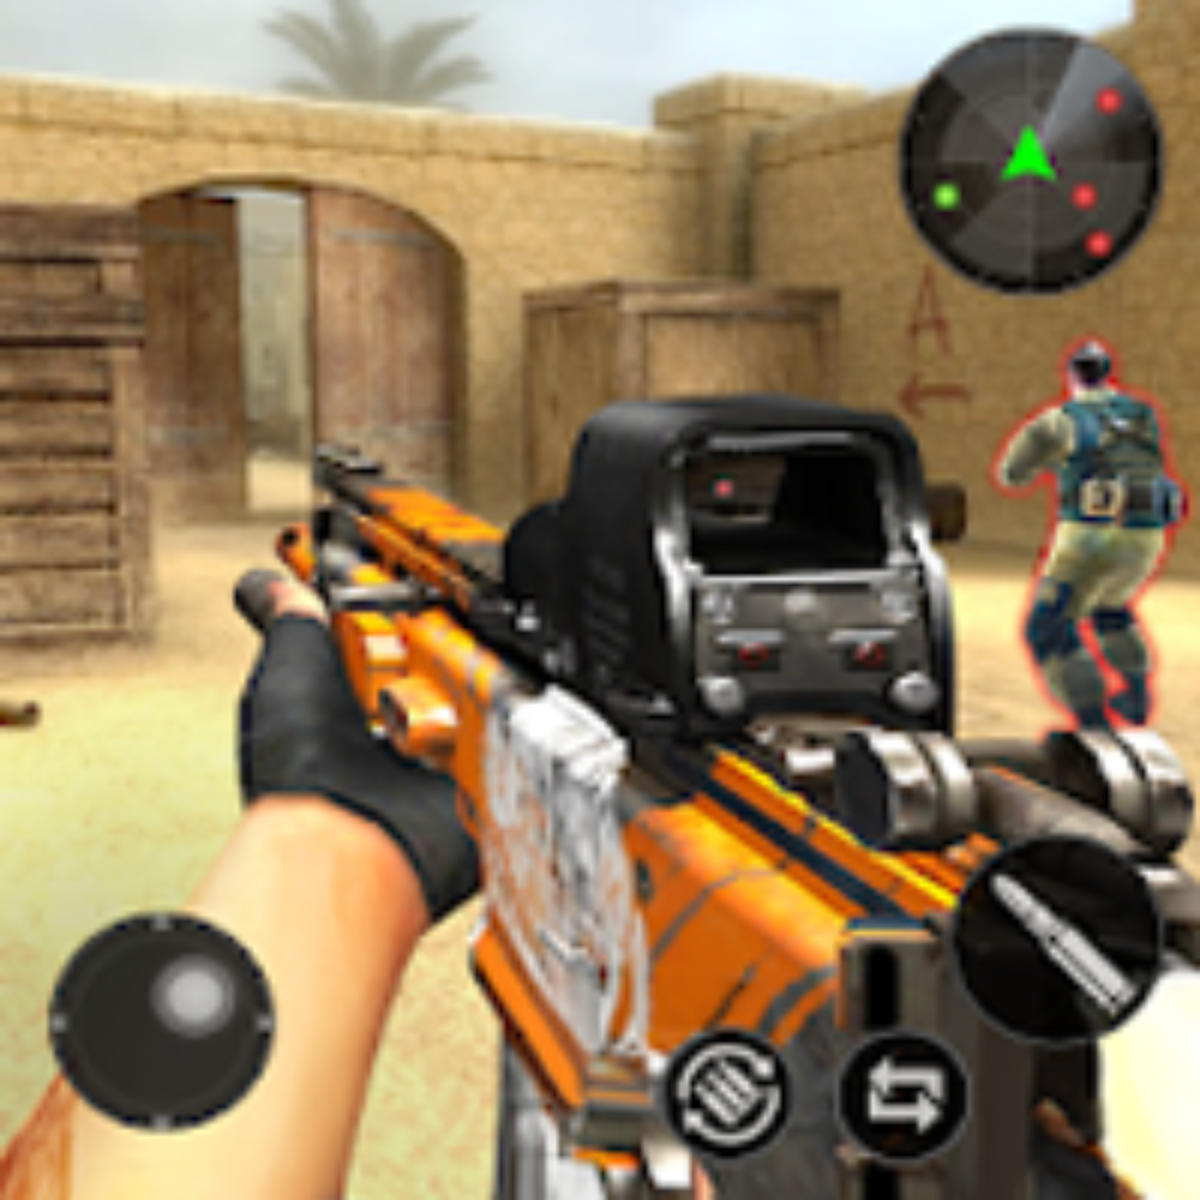 Critical Strike - Multiplayer PvP Shooting Game v1.0 Apk Mod (Munição  Infinita) - Night Wolf Apk